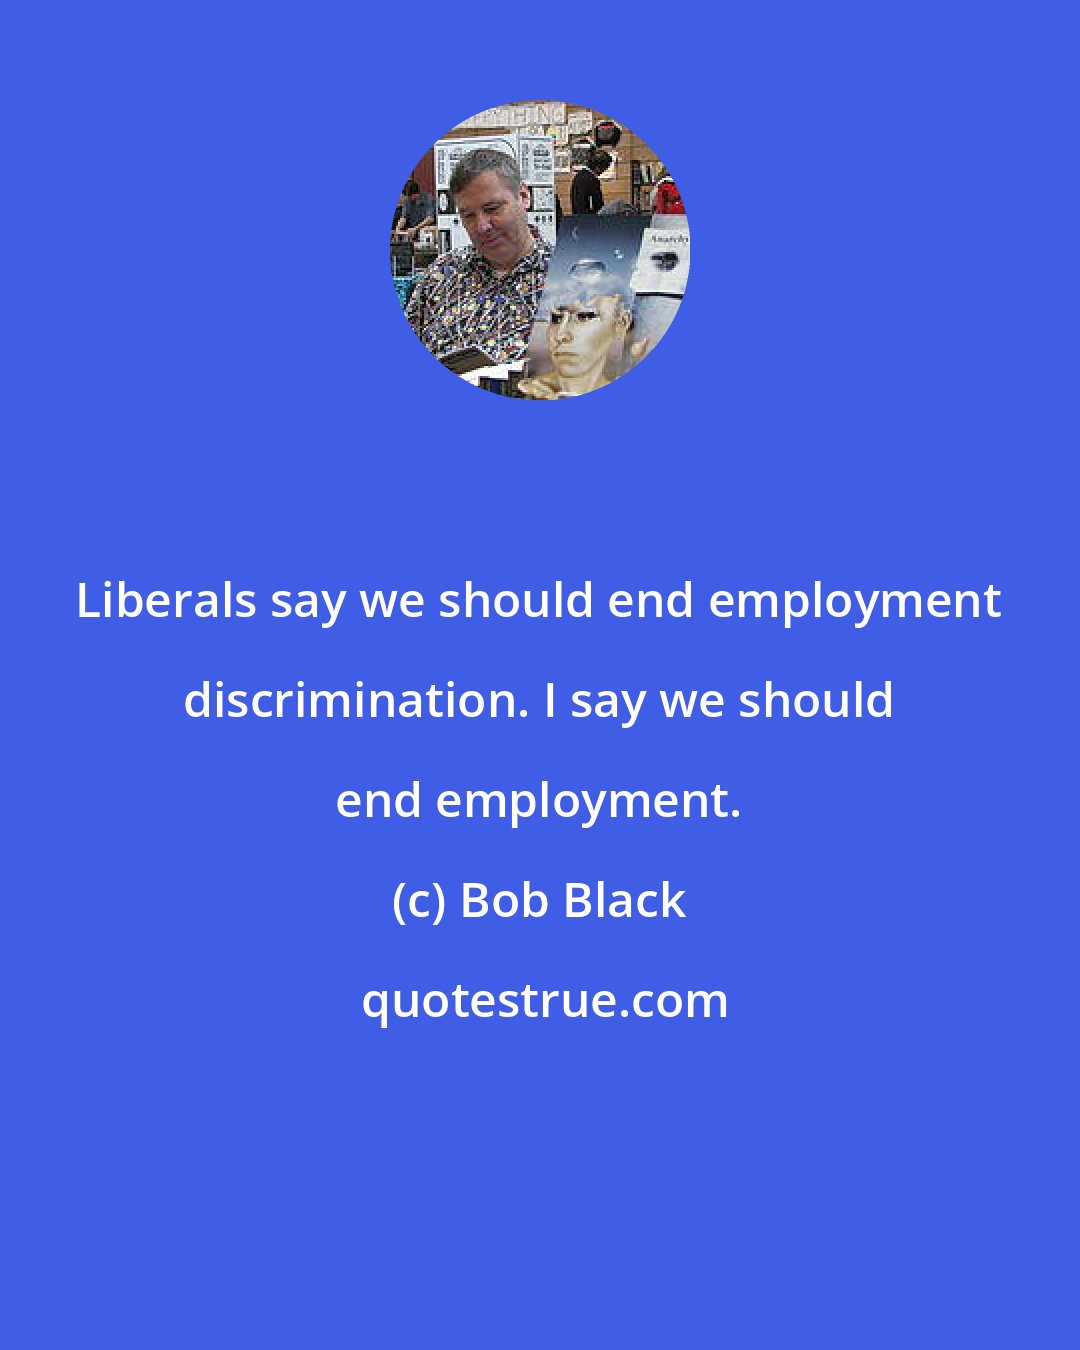 Bob Black: Liberals say we should end employment discrimination. I say we should end employment.